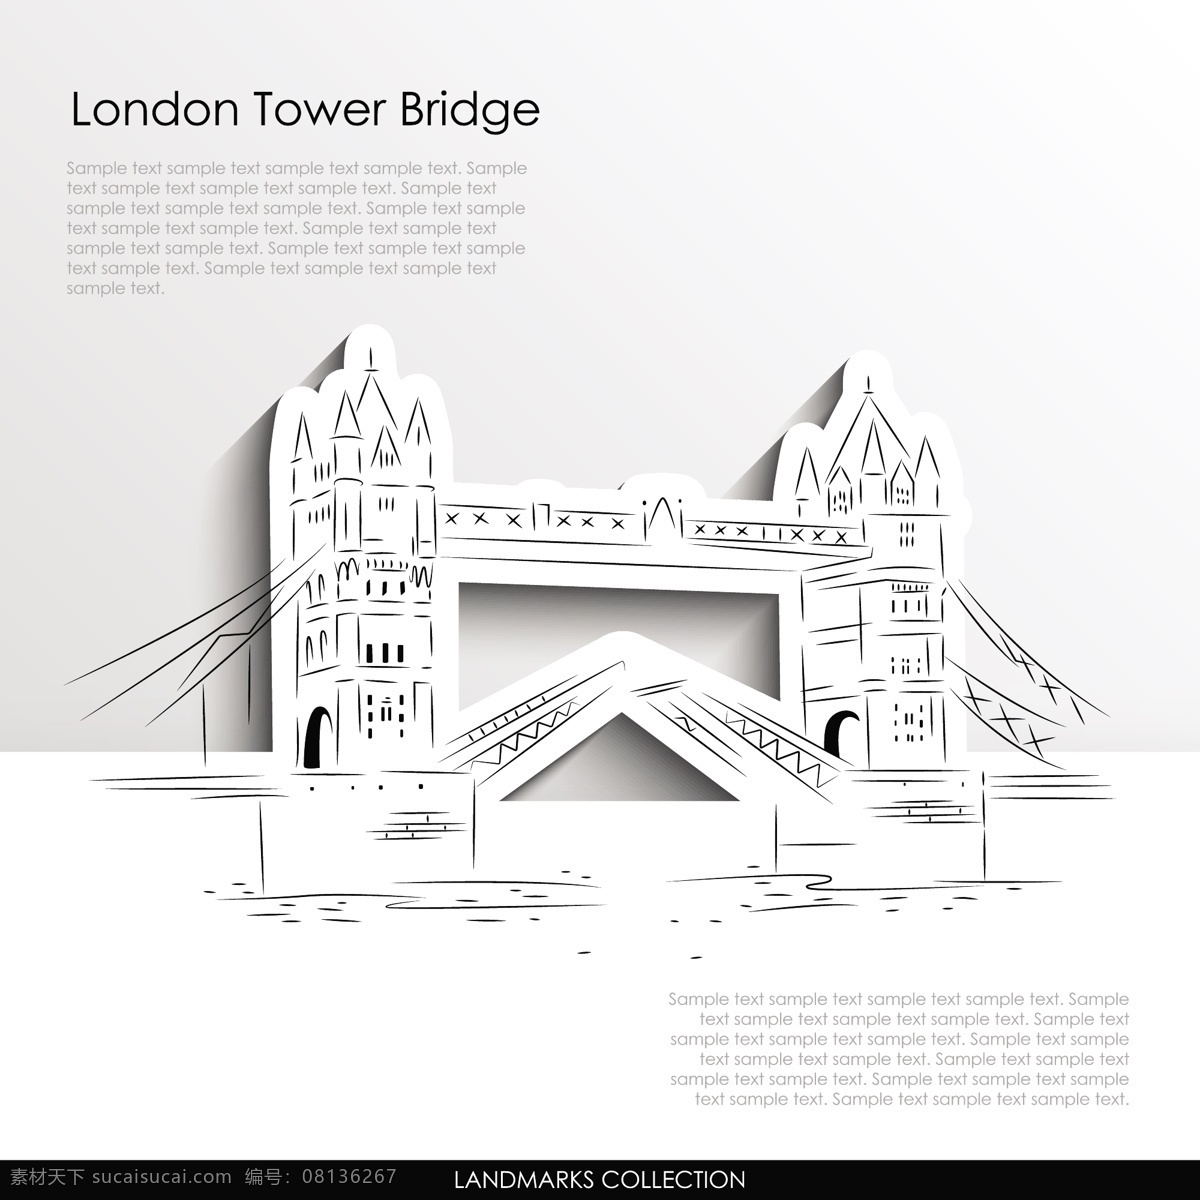 伦敦 塔桥 城市建筑 建筑家居 旅游 旅游素材 著名景点 伦敦塔桥 手绘 素描 旅游景点 旅行世界名胜 矢量 装饰素材 建筑设计